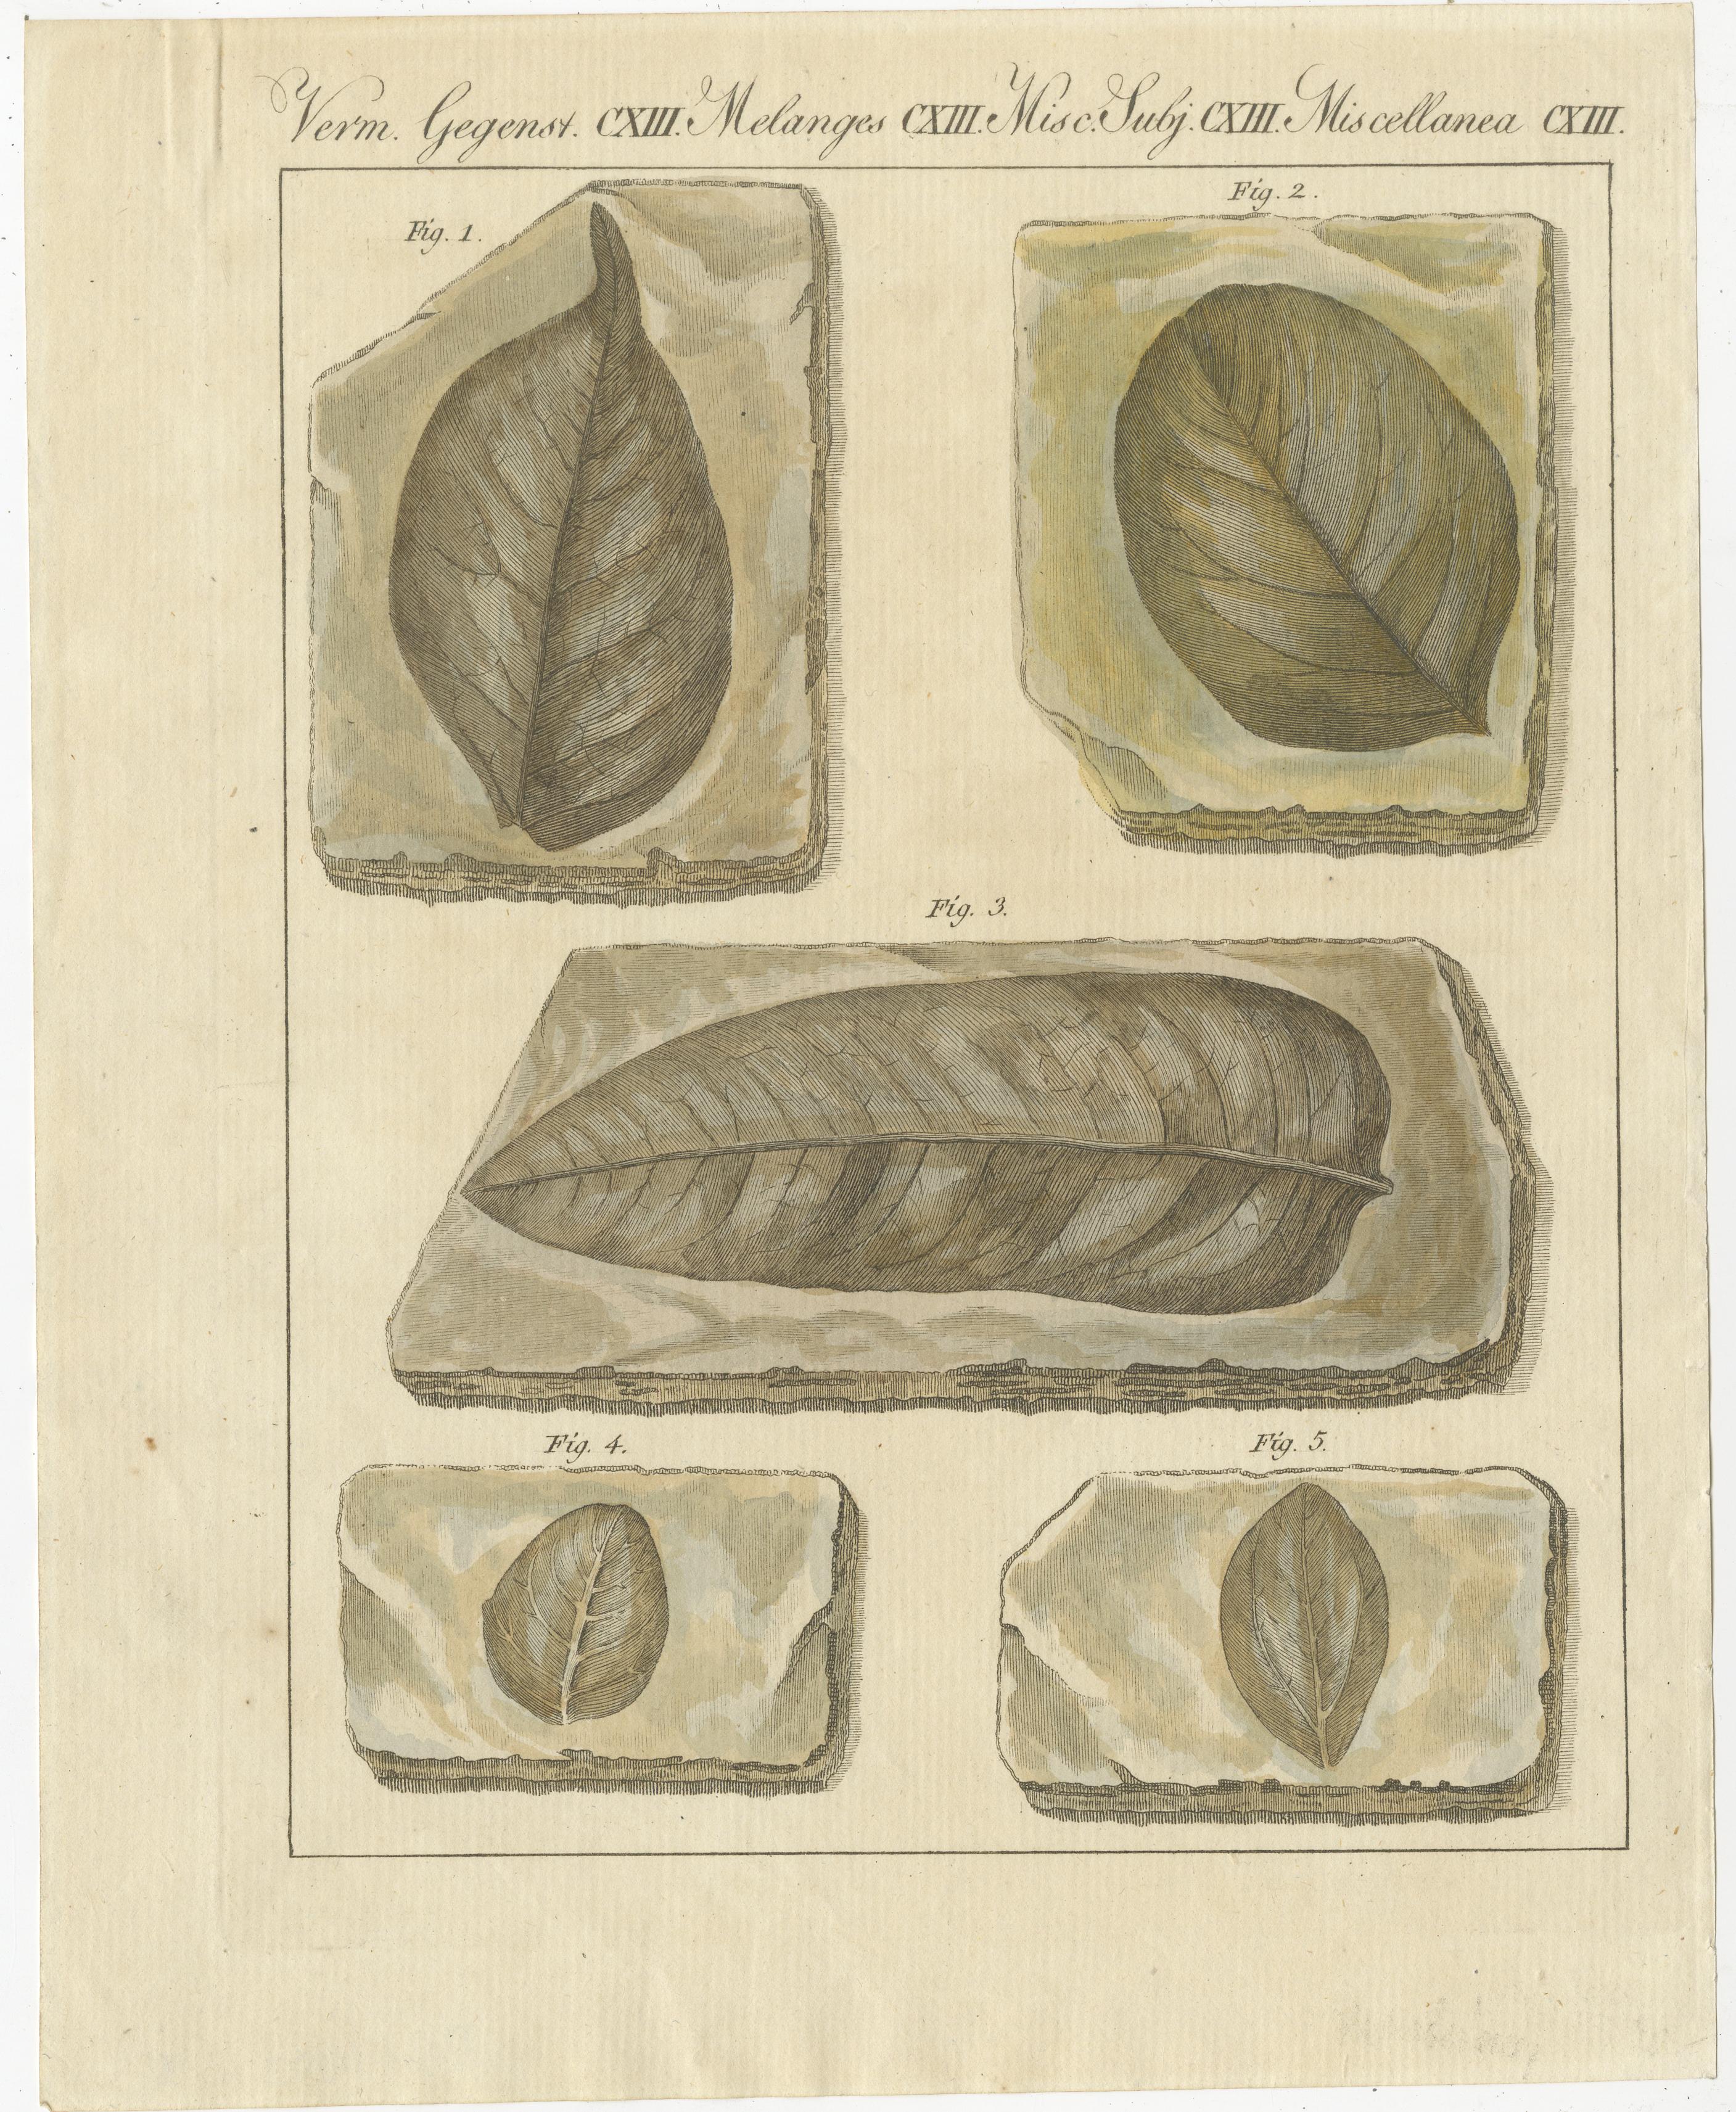 Originaler antiker Druck von fossilen Blättern aus der prähistorischen Periode. Dieser Druck stammt aus dem 